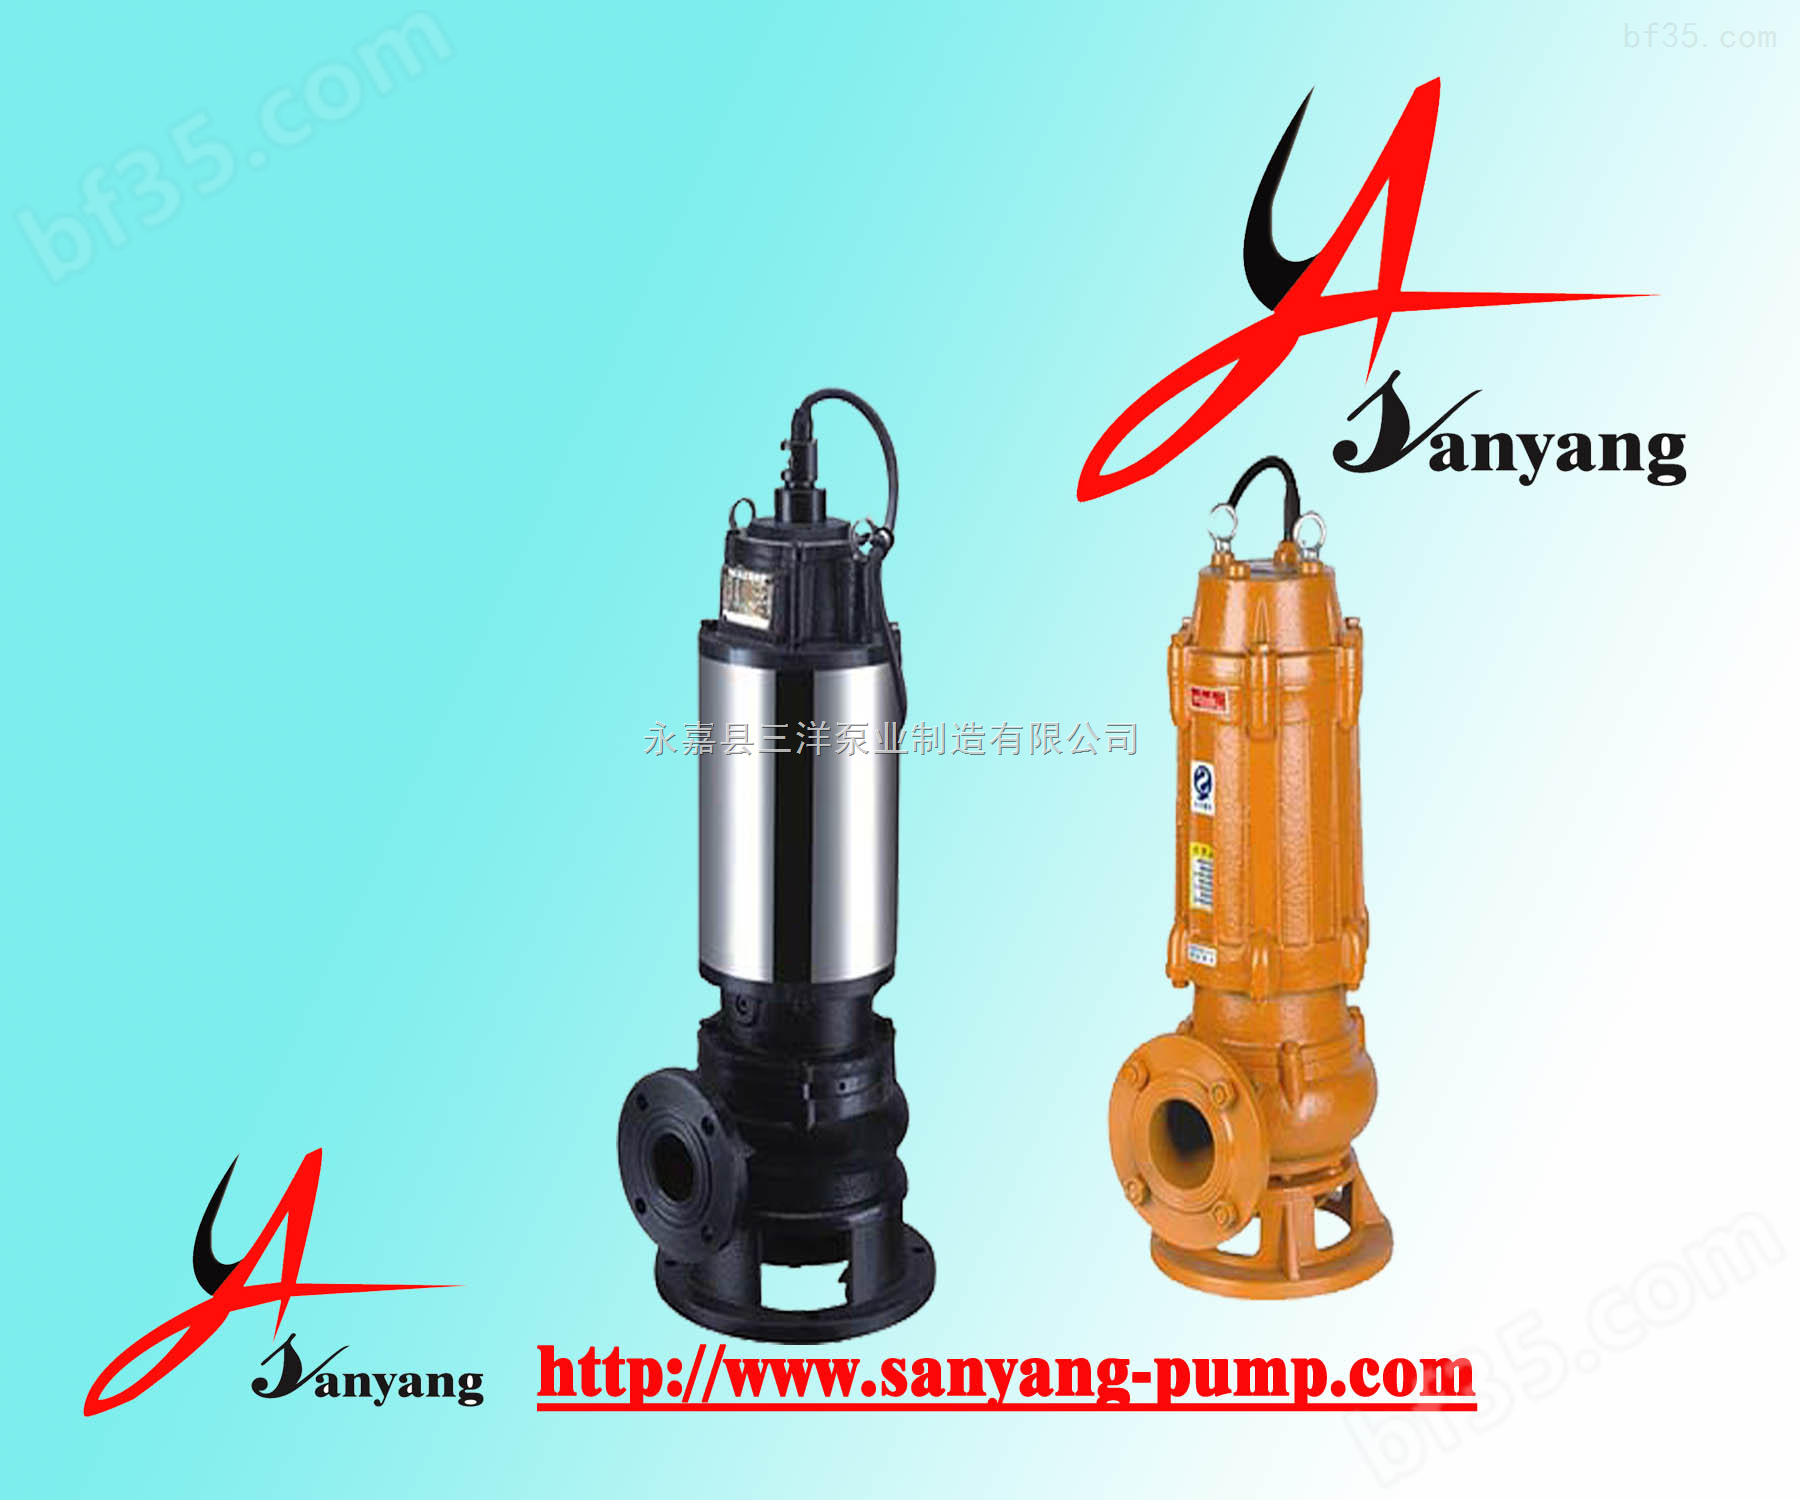 永嘉三洋,JYWQ自动搅匀式排污泵,JYWQ80-40-7-1600-2.2